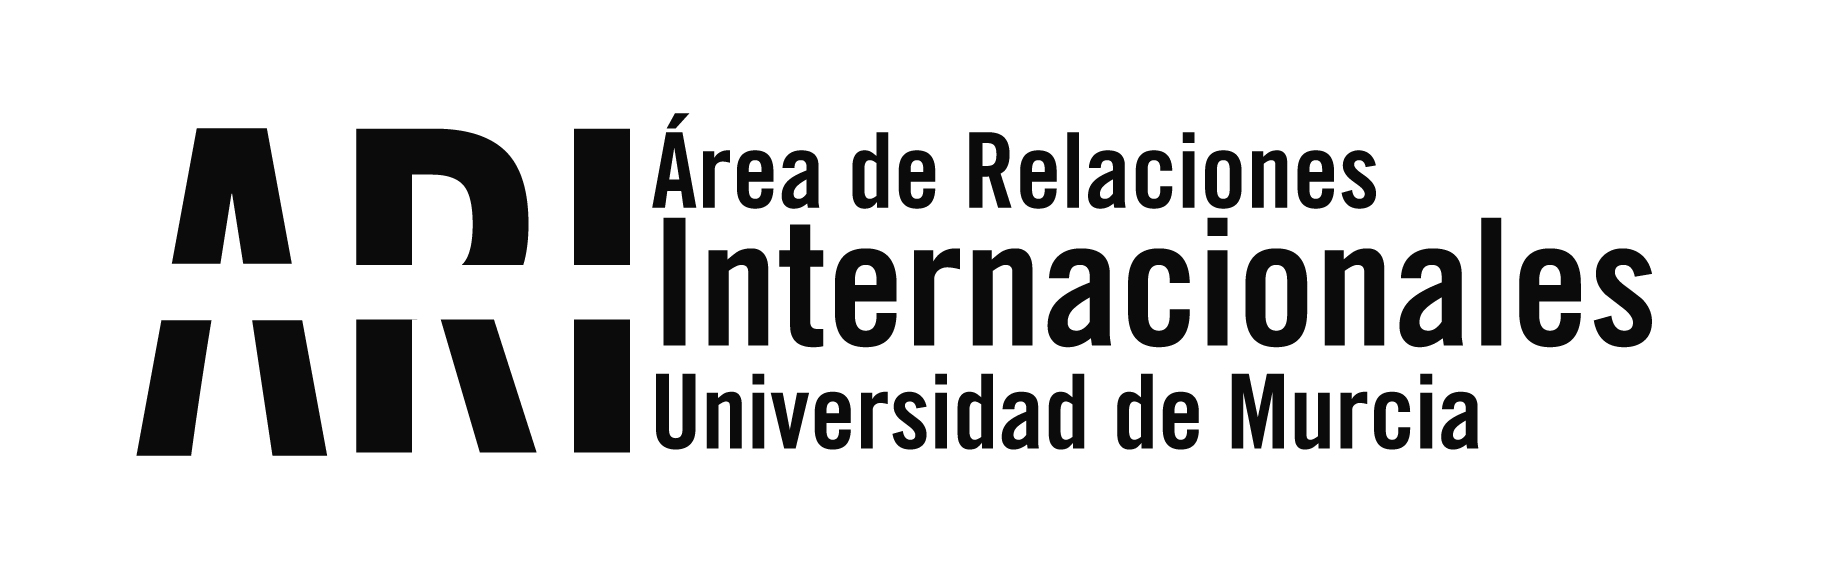 Recomendaciones del Ministerio de Asuntos Exteriores a los ciudadanos españoles en el exterior 18-03-2020 - Área de Relaciones Internacionales